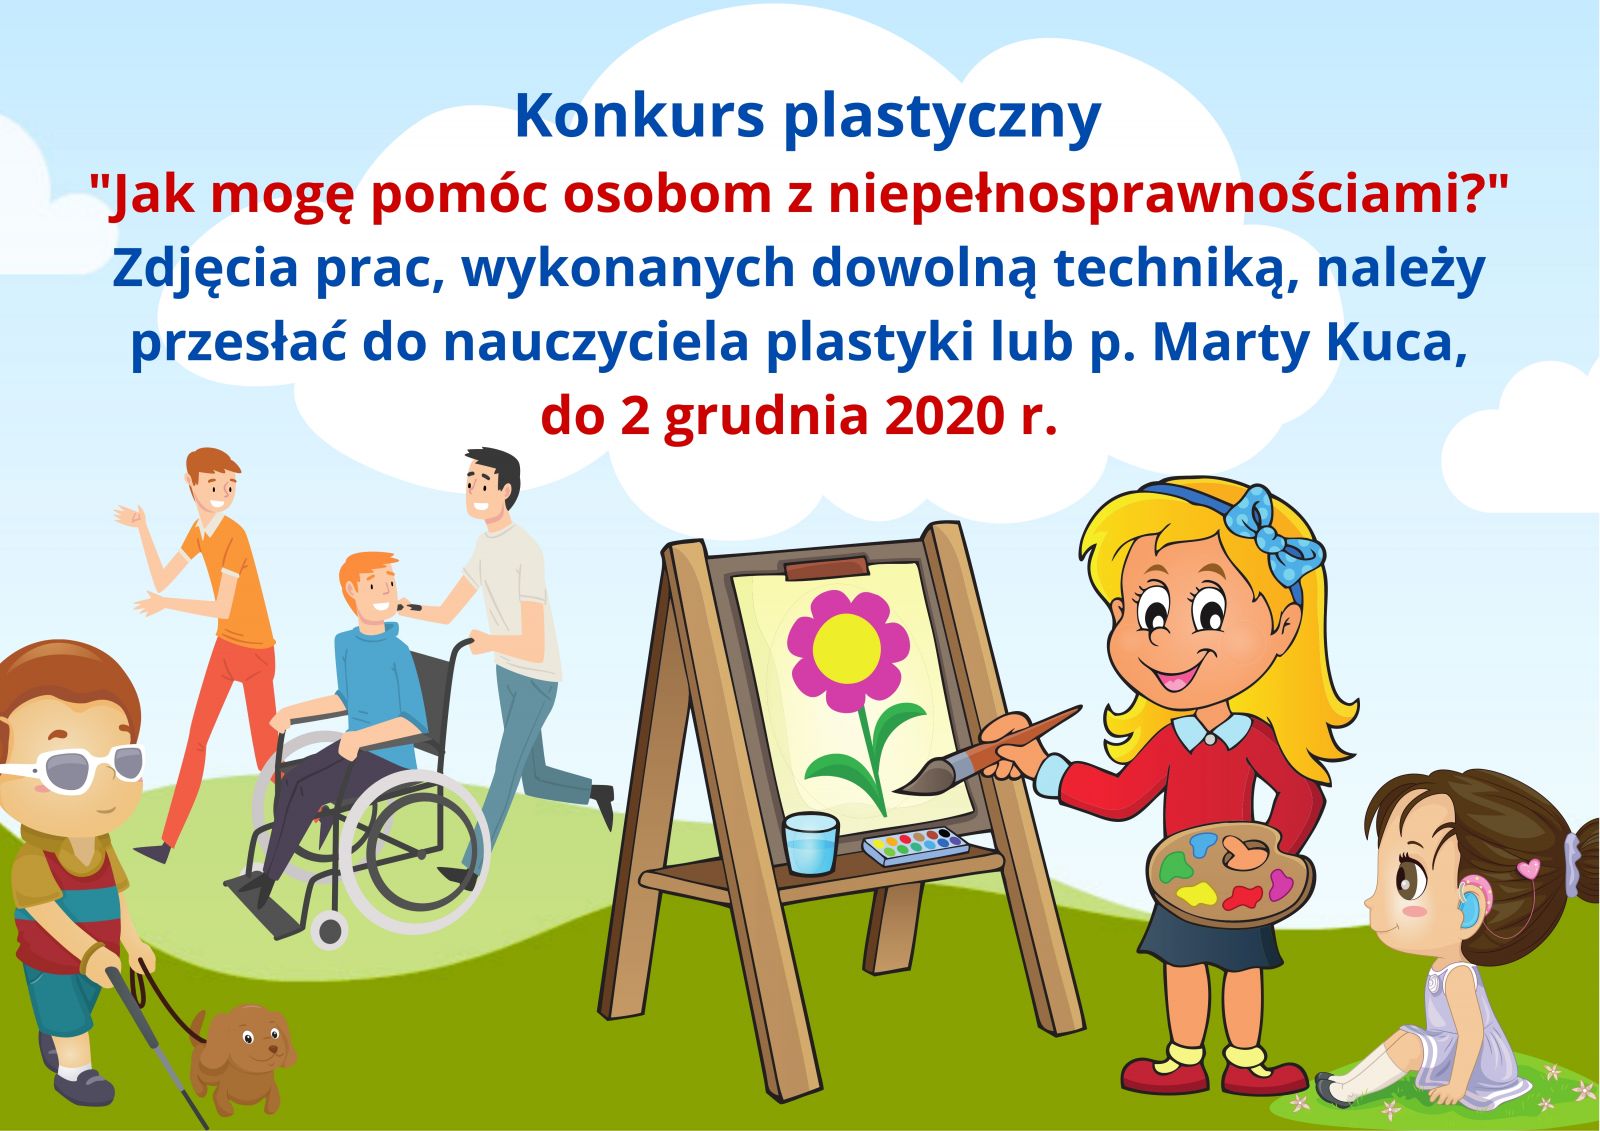 Ogłoszenie - Konkurs plastyczny "Jak mogę pomóc osobom z niepełnosprawnościami?" Zdjęcia prac, wykonanych dowolną techniką, należy przesłać do nauczyciela plastyki lub p. Marty Kuca, do 2 grudnia 2020 r. Autor grafiki Marta Kuca